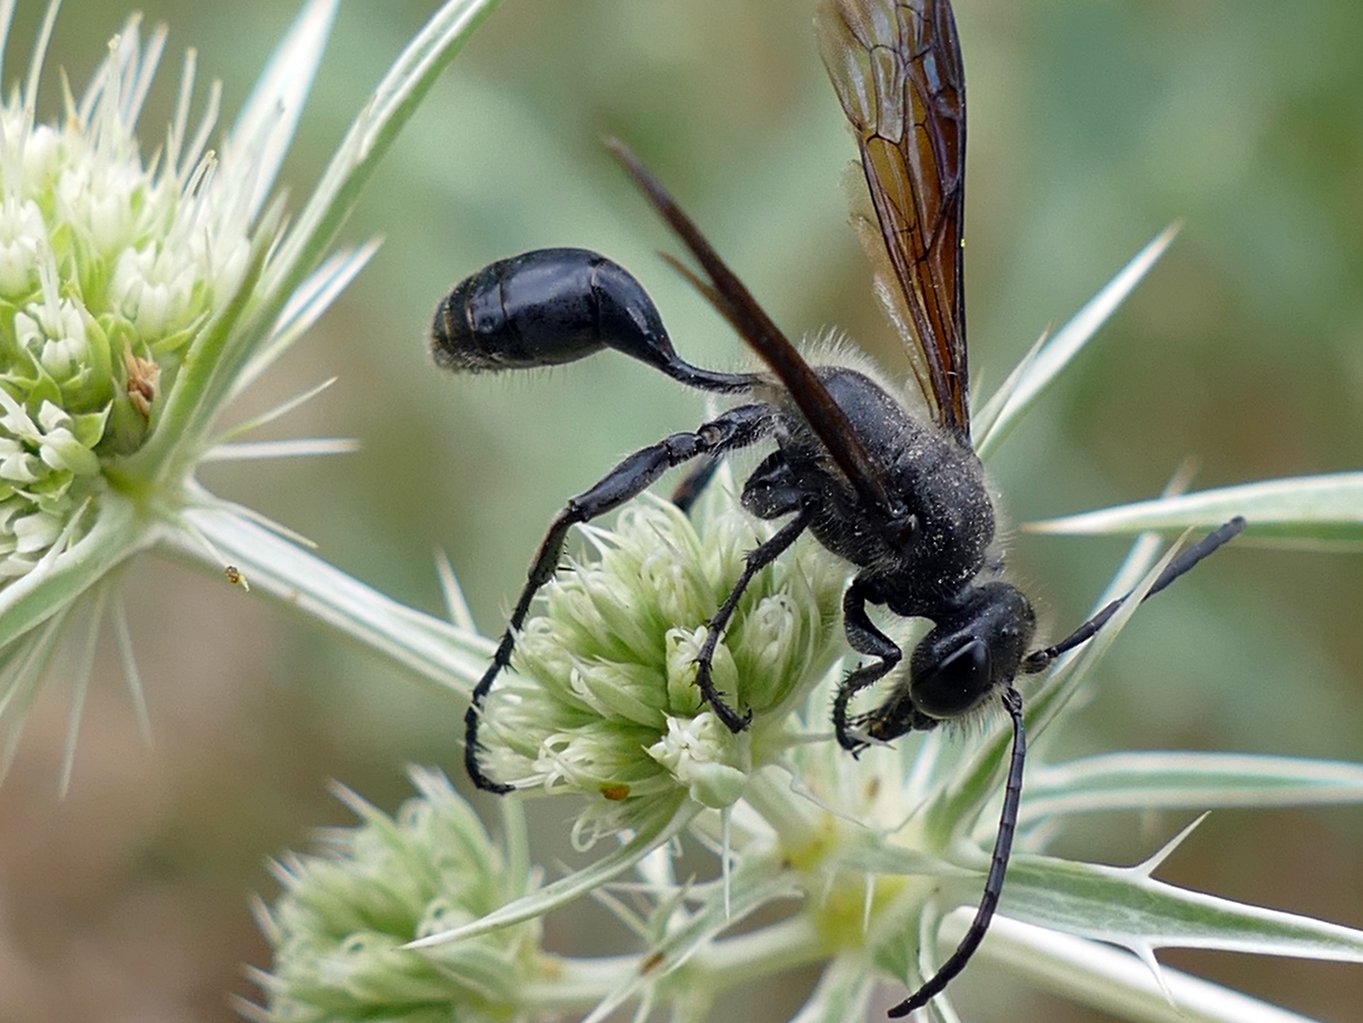 Ein schwarzes Insekt ist über eine grüne Blume gebeugt und greift nach einem Stängel der Blüte. 